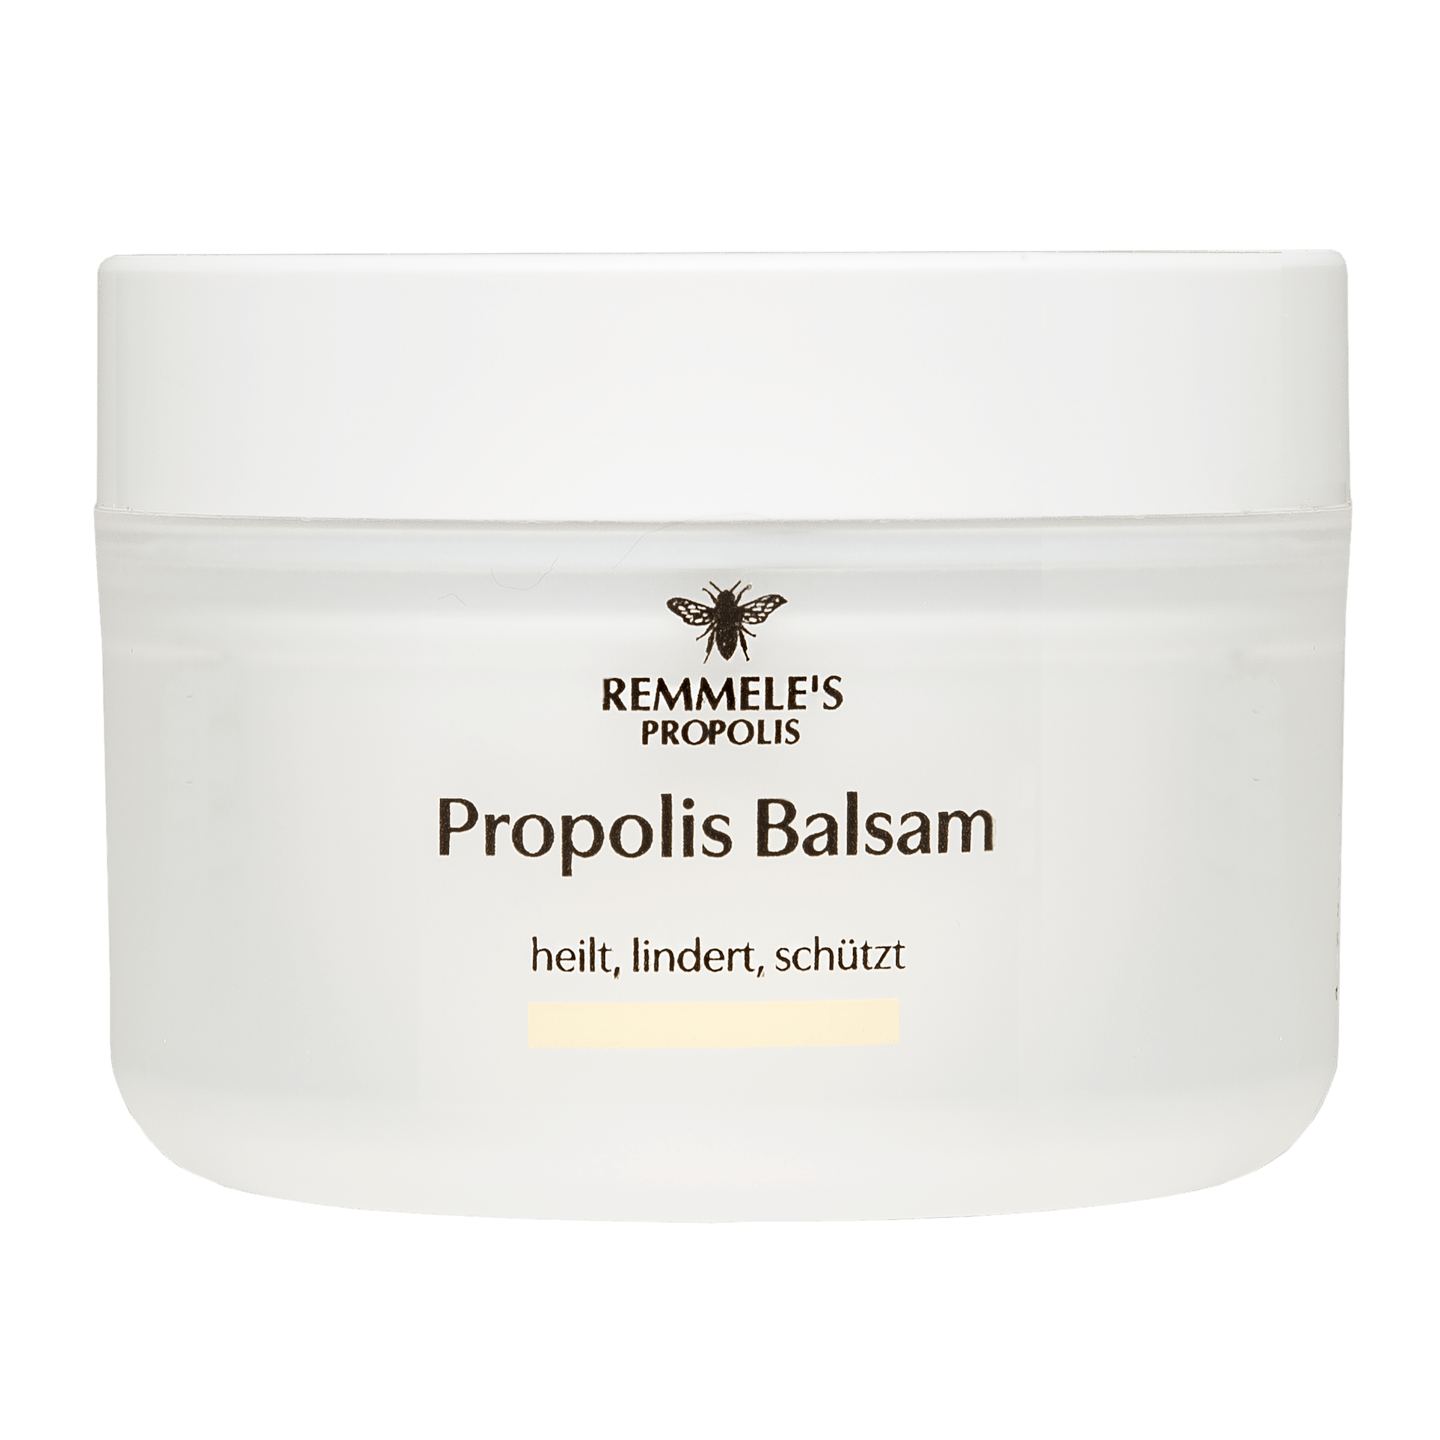 Remmele's Propolis - Propolis Balsam, 50 ml